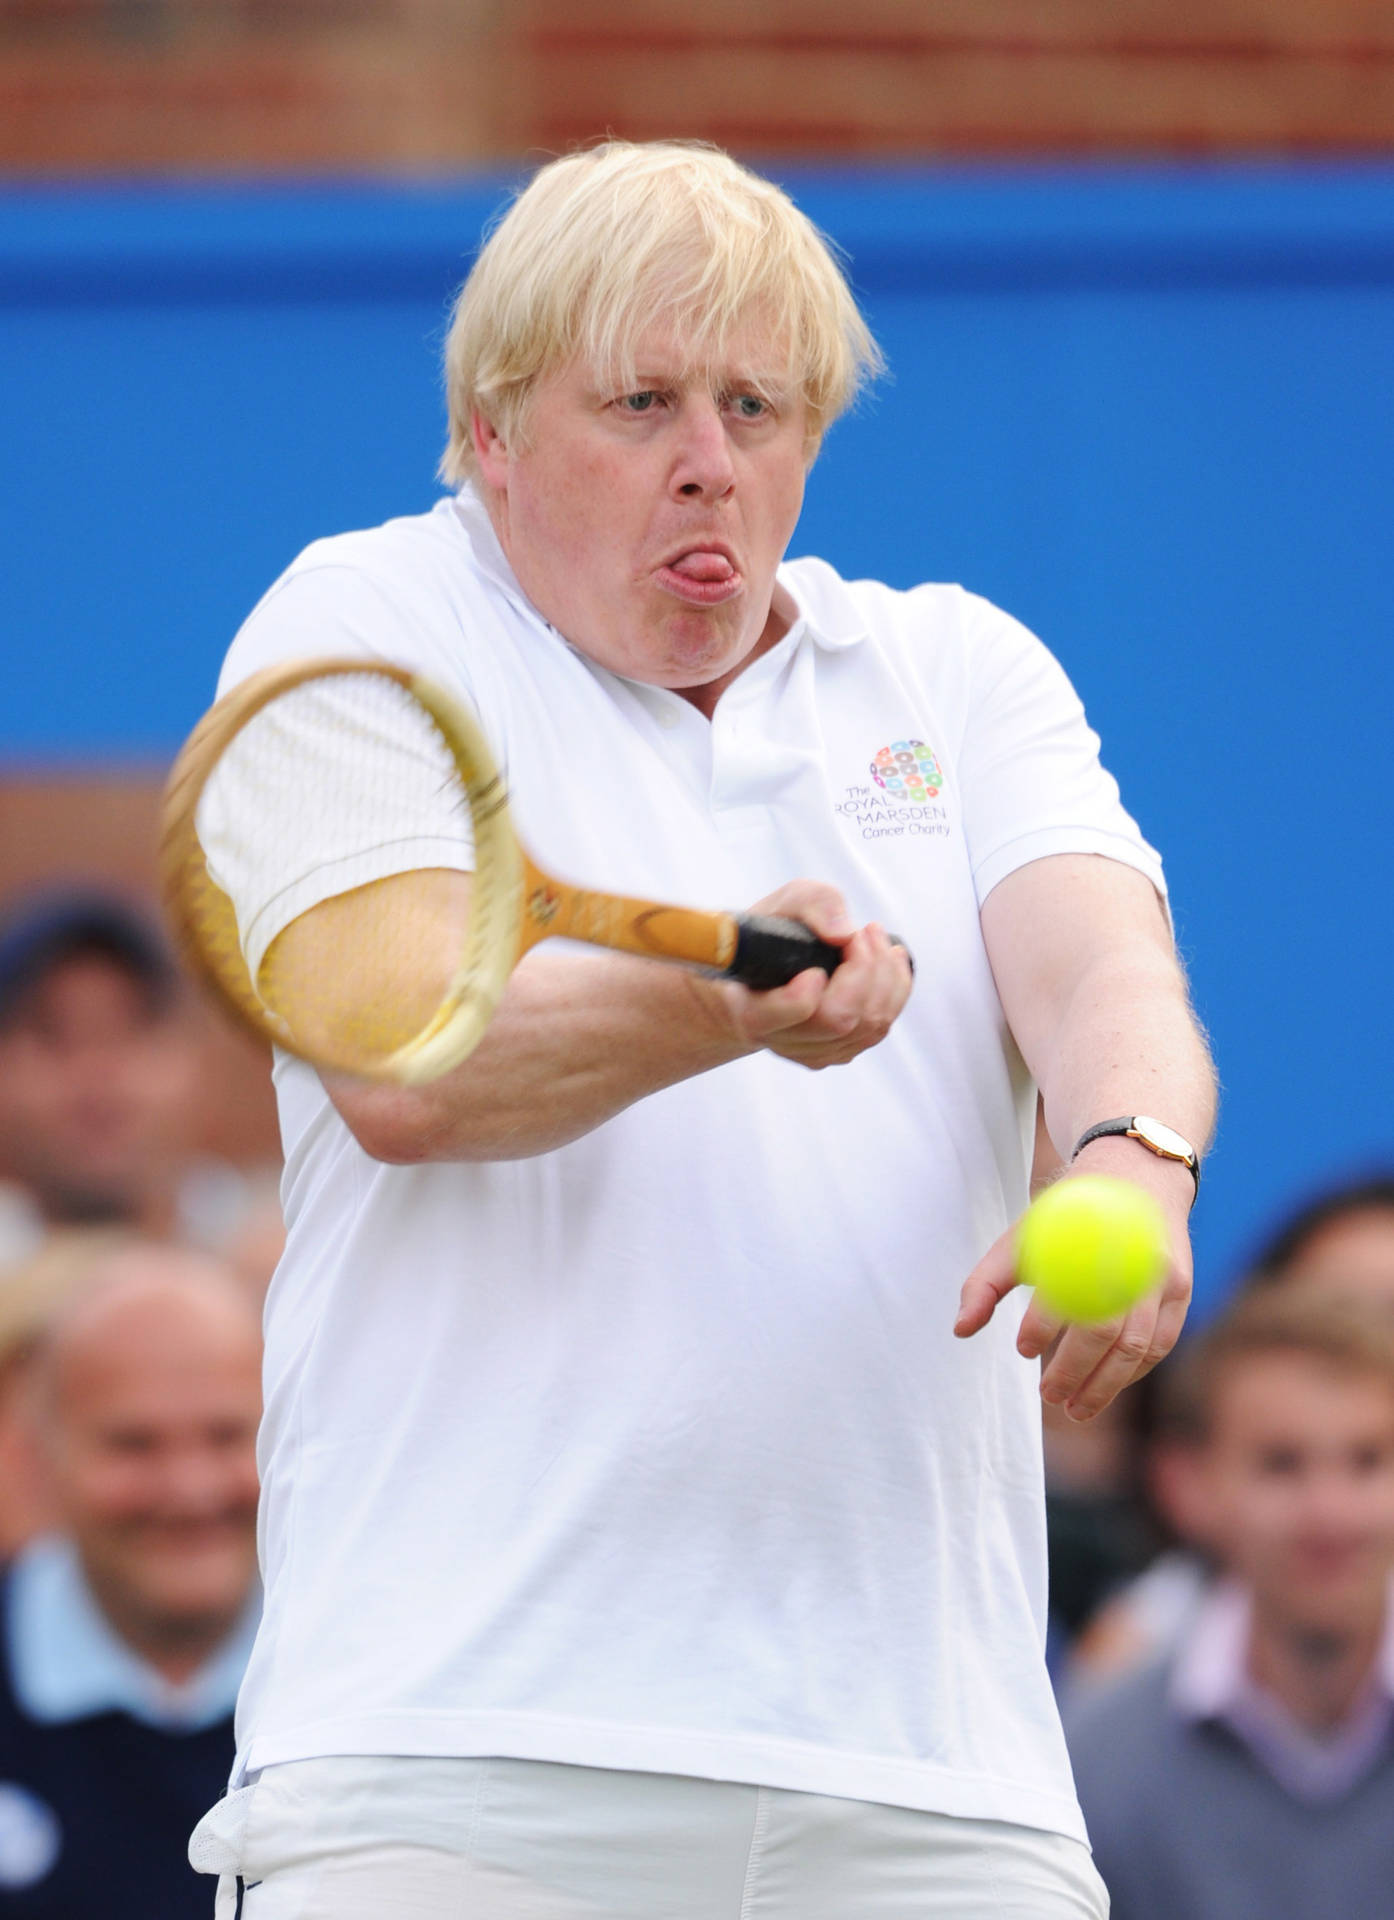 Borisjohnson Spelar Tennis. Wallpaper